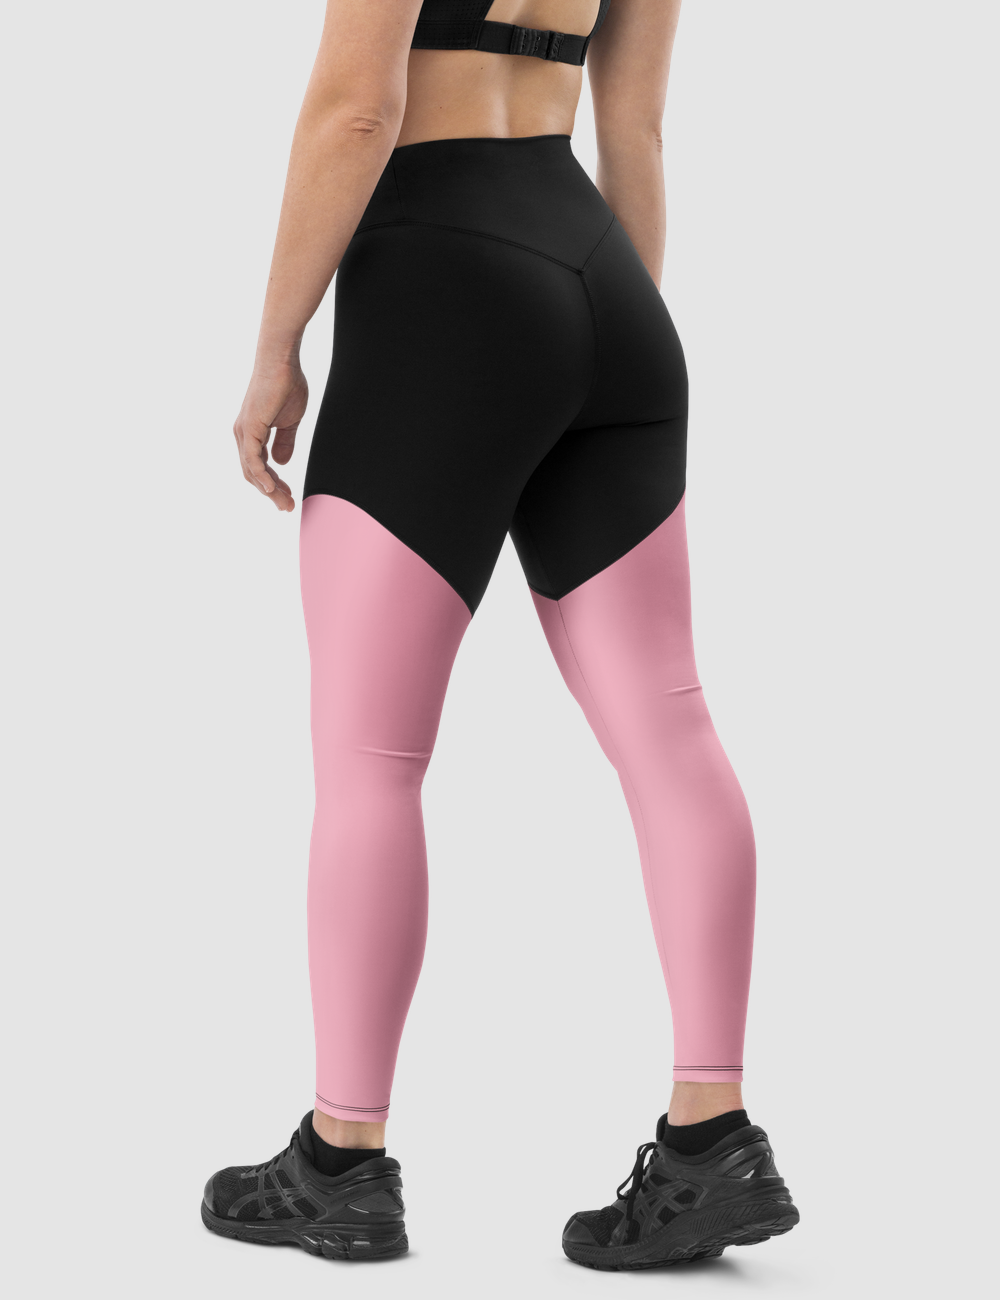 Cupid Pink | Women's Premium Sports Leggings OniTakai